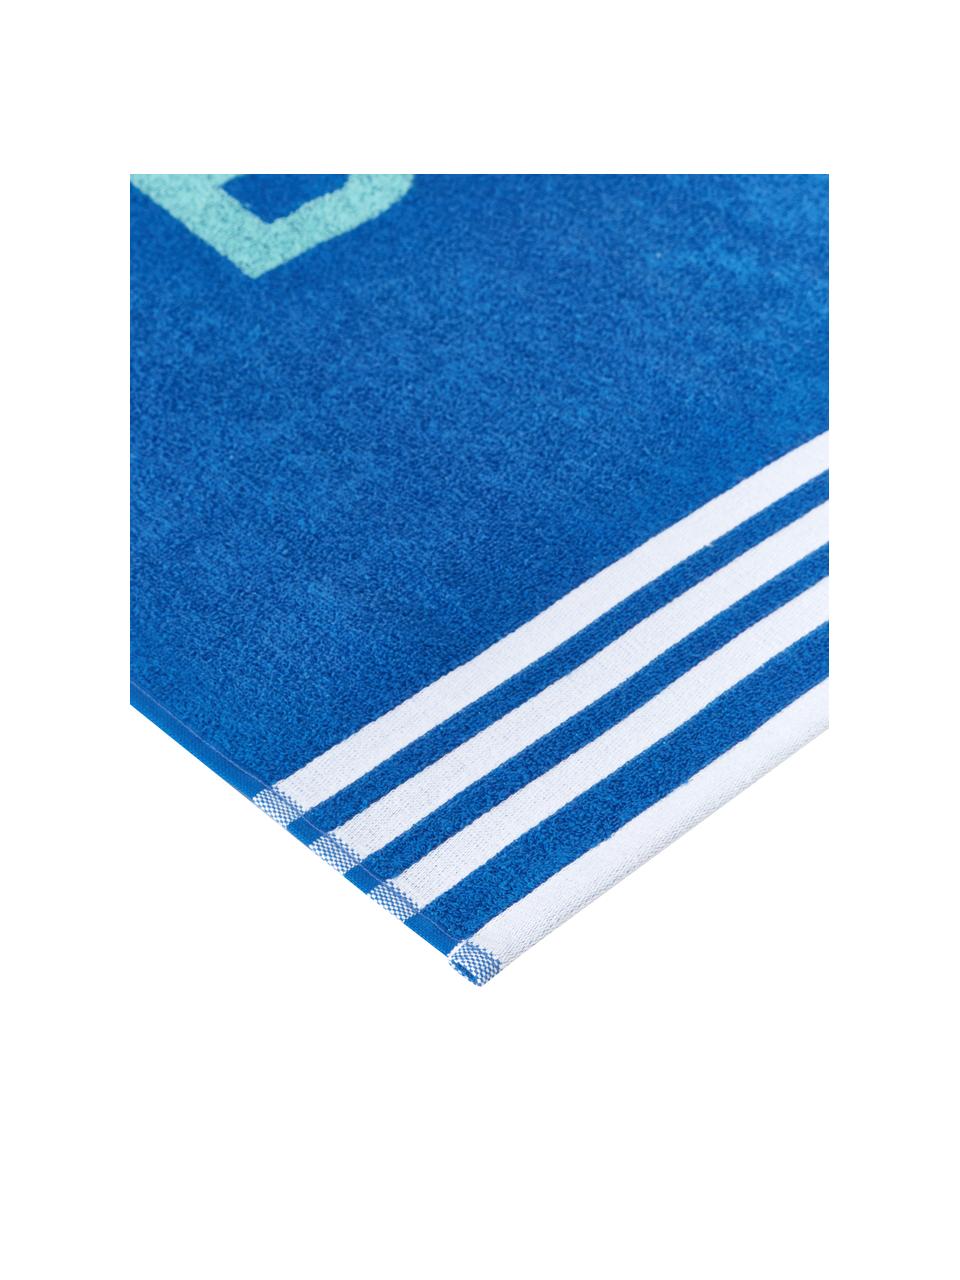 Serviette de plage bleu Cool, 100 % coton, Tons bleus, larg. 90 x long. 160 cm